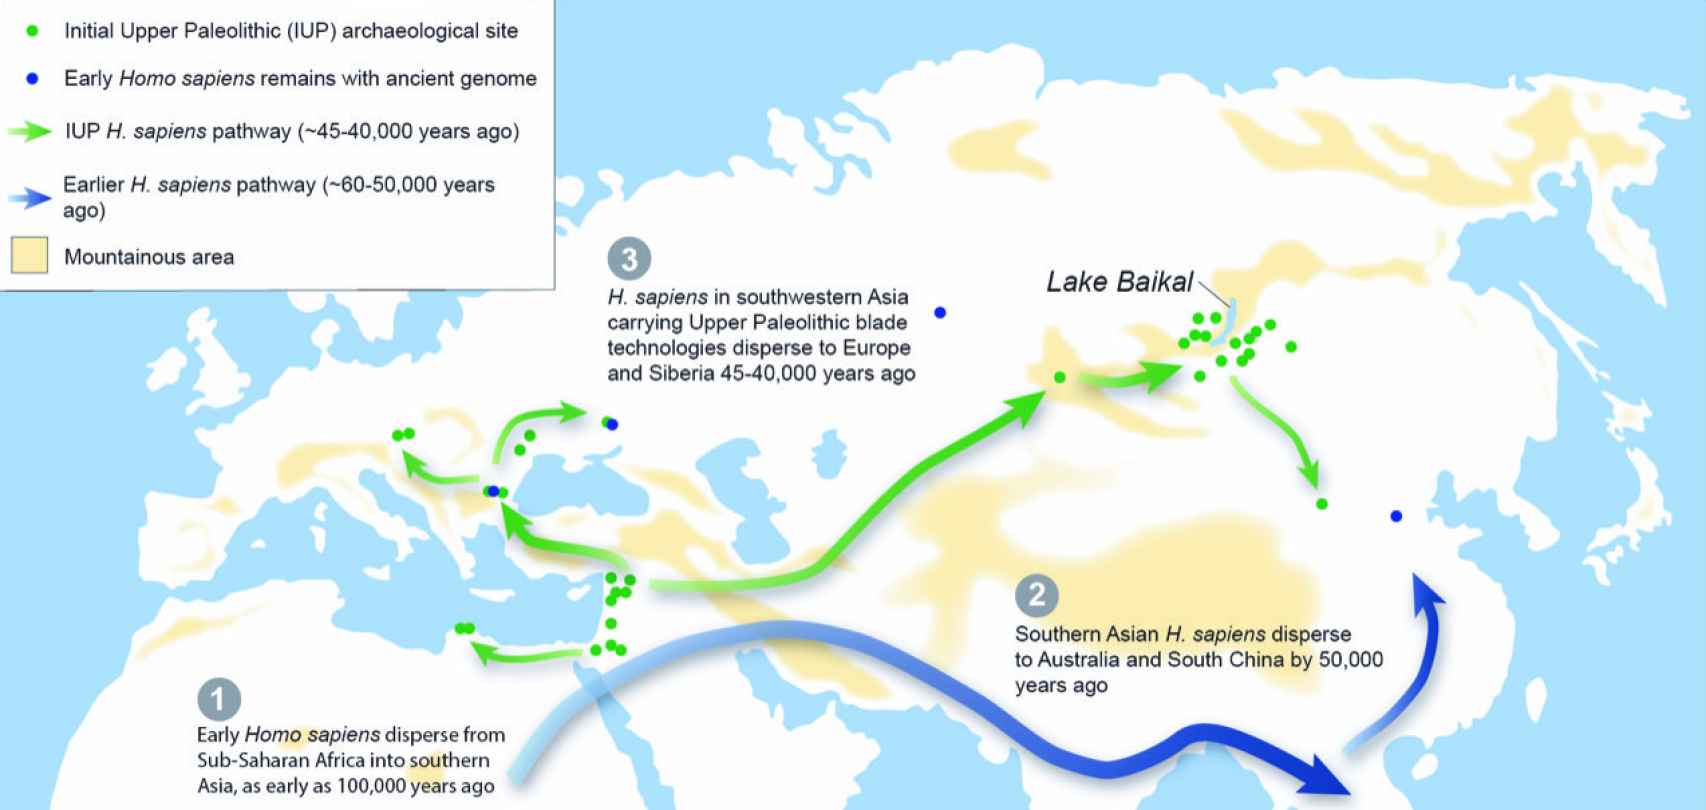 Mapa sobre las rutas migratorias del 'Homo sapiens' desde África hacia Eurasia.